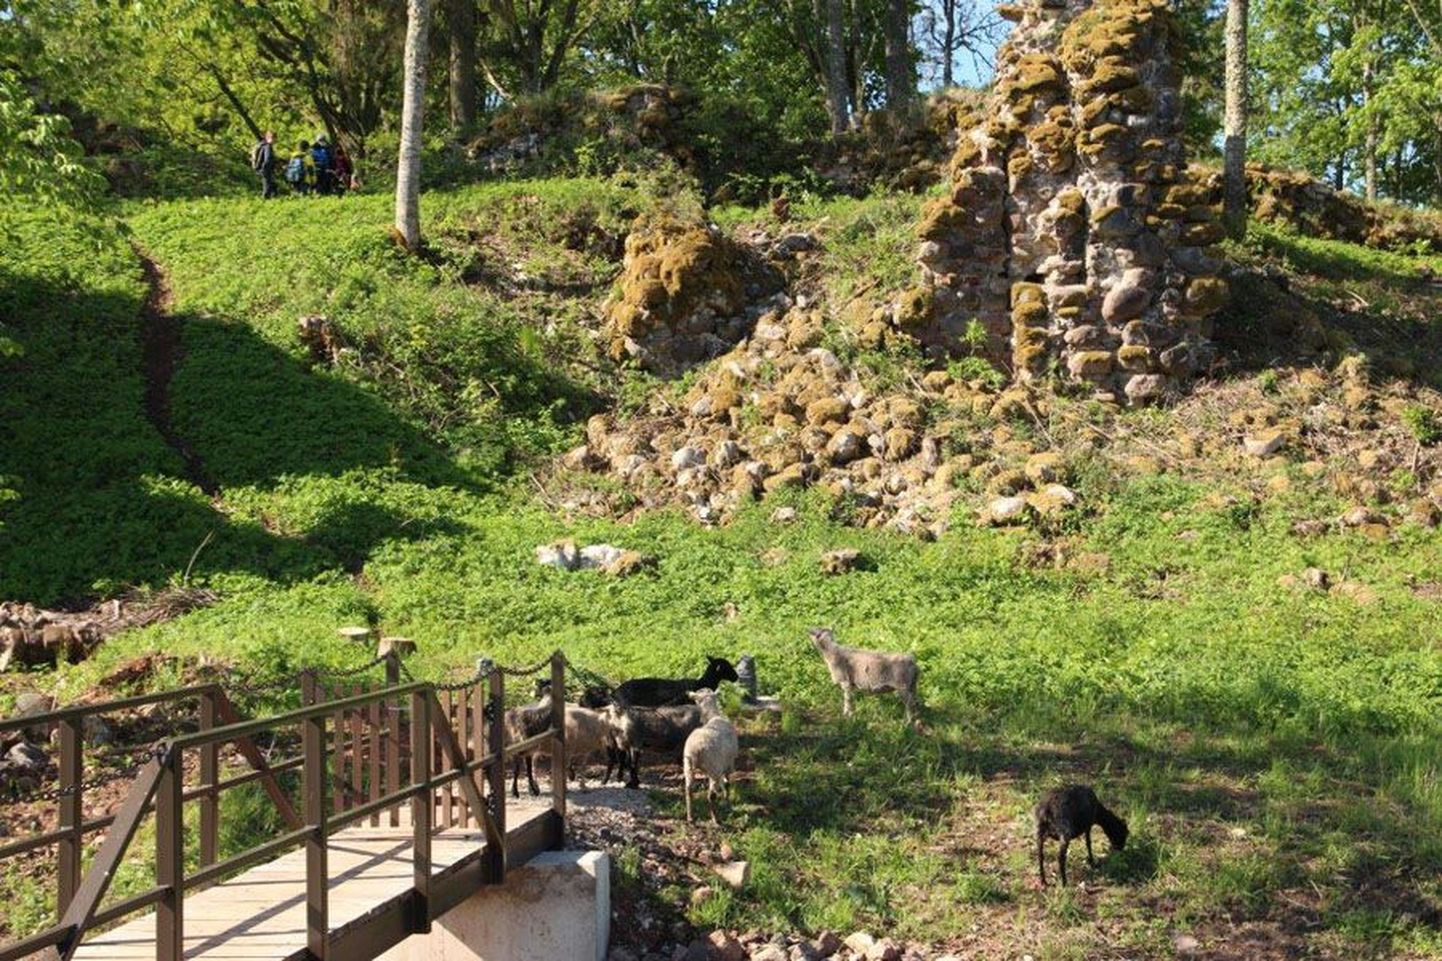 Praegu piiravad lambad Tarvastu ordulinnuse lähedal muru, kuid enne talve peaks seal seisma trepp, et oleks mugav silla juurest linnusemüürideni kõndida.